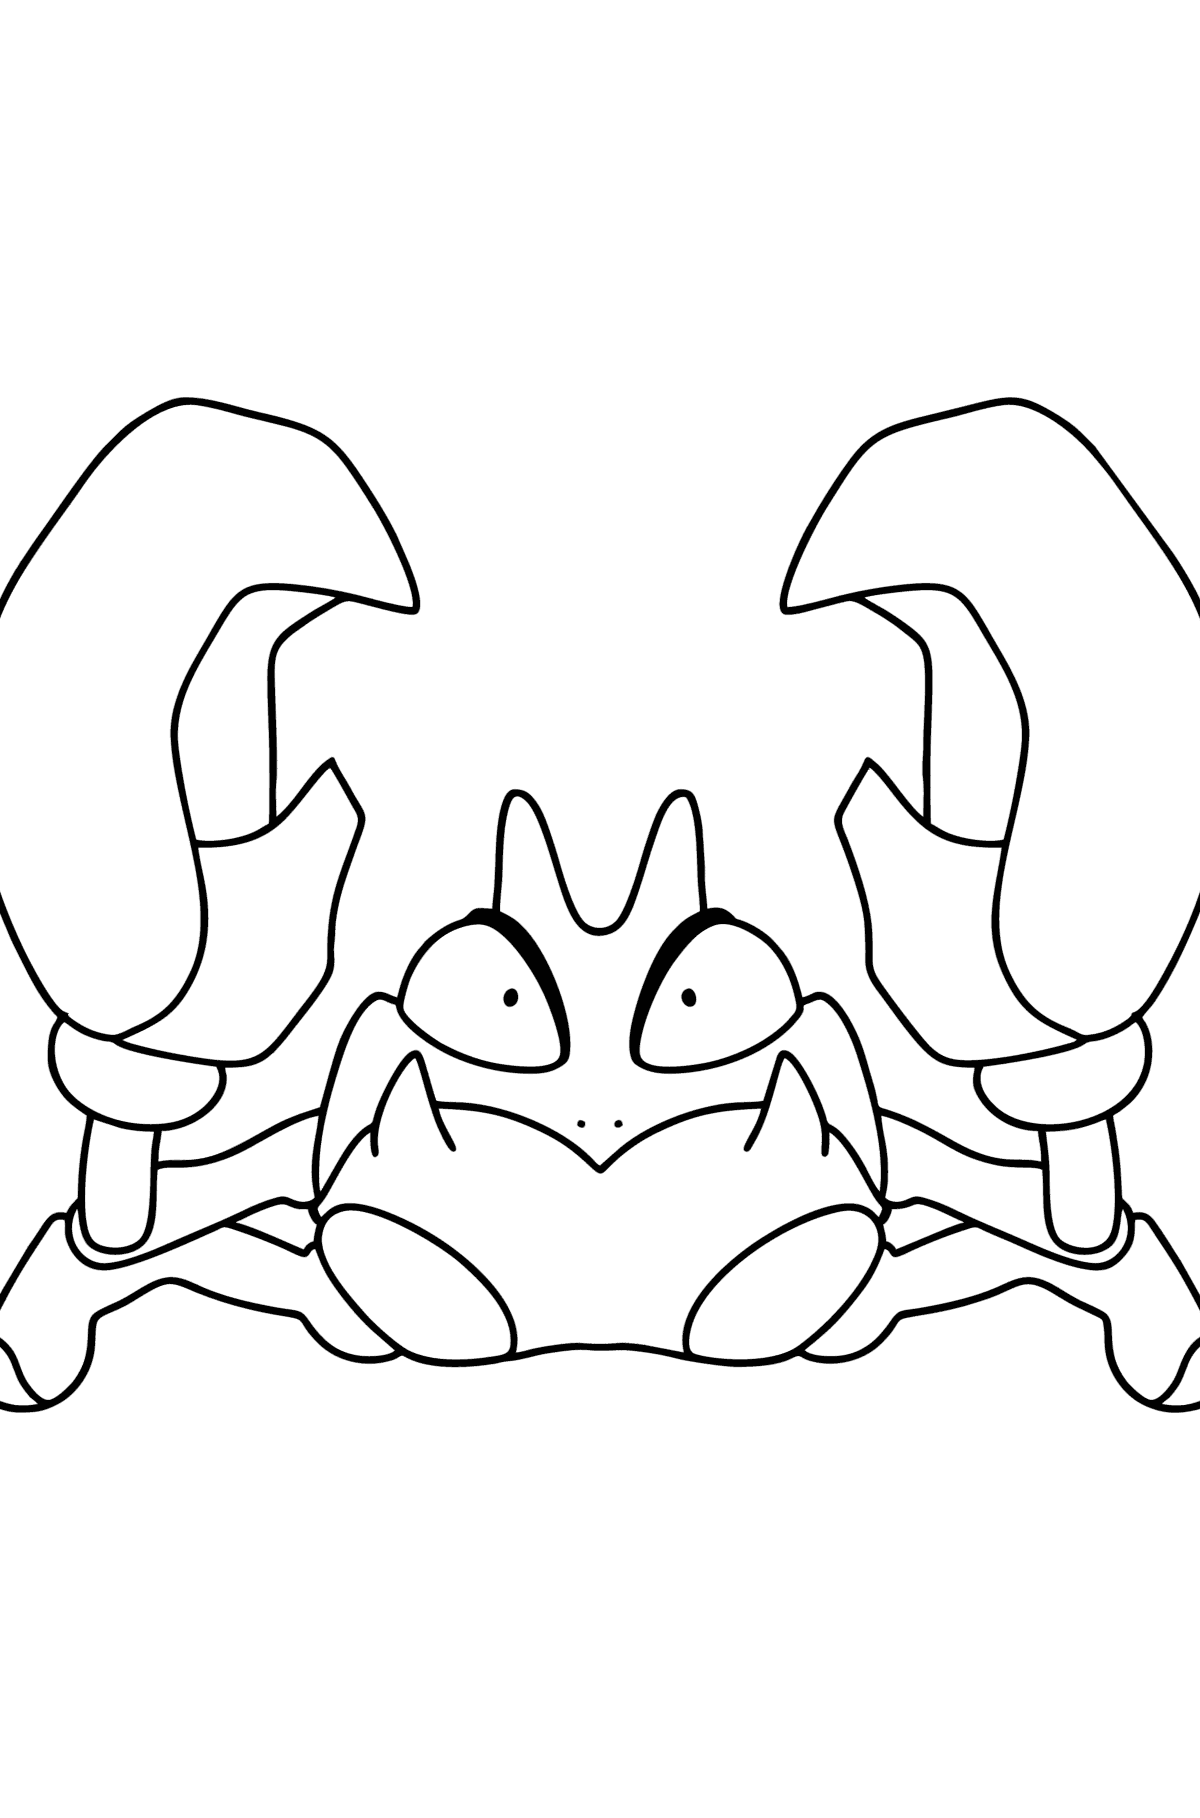 Desenho de Pokemon Go Krabby para colorir - Imagens para Colorir para Crianças